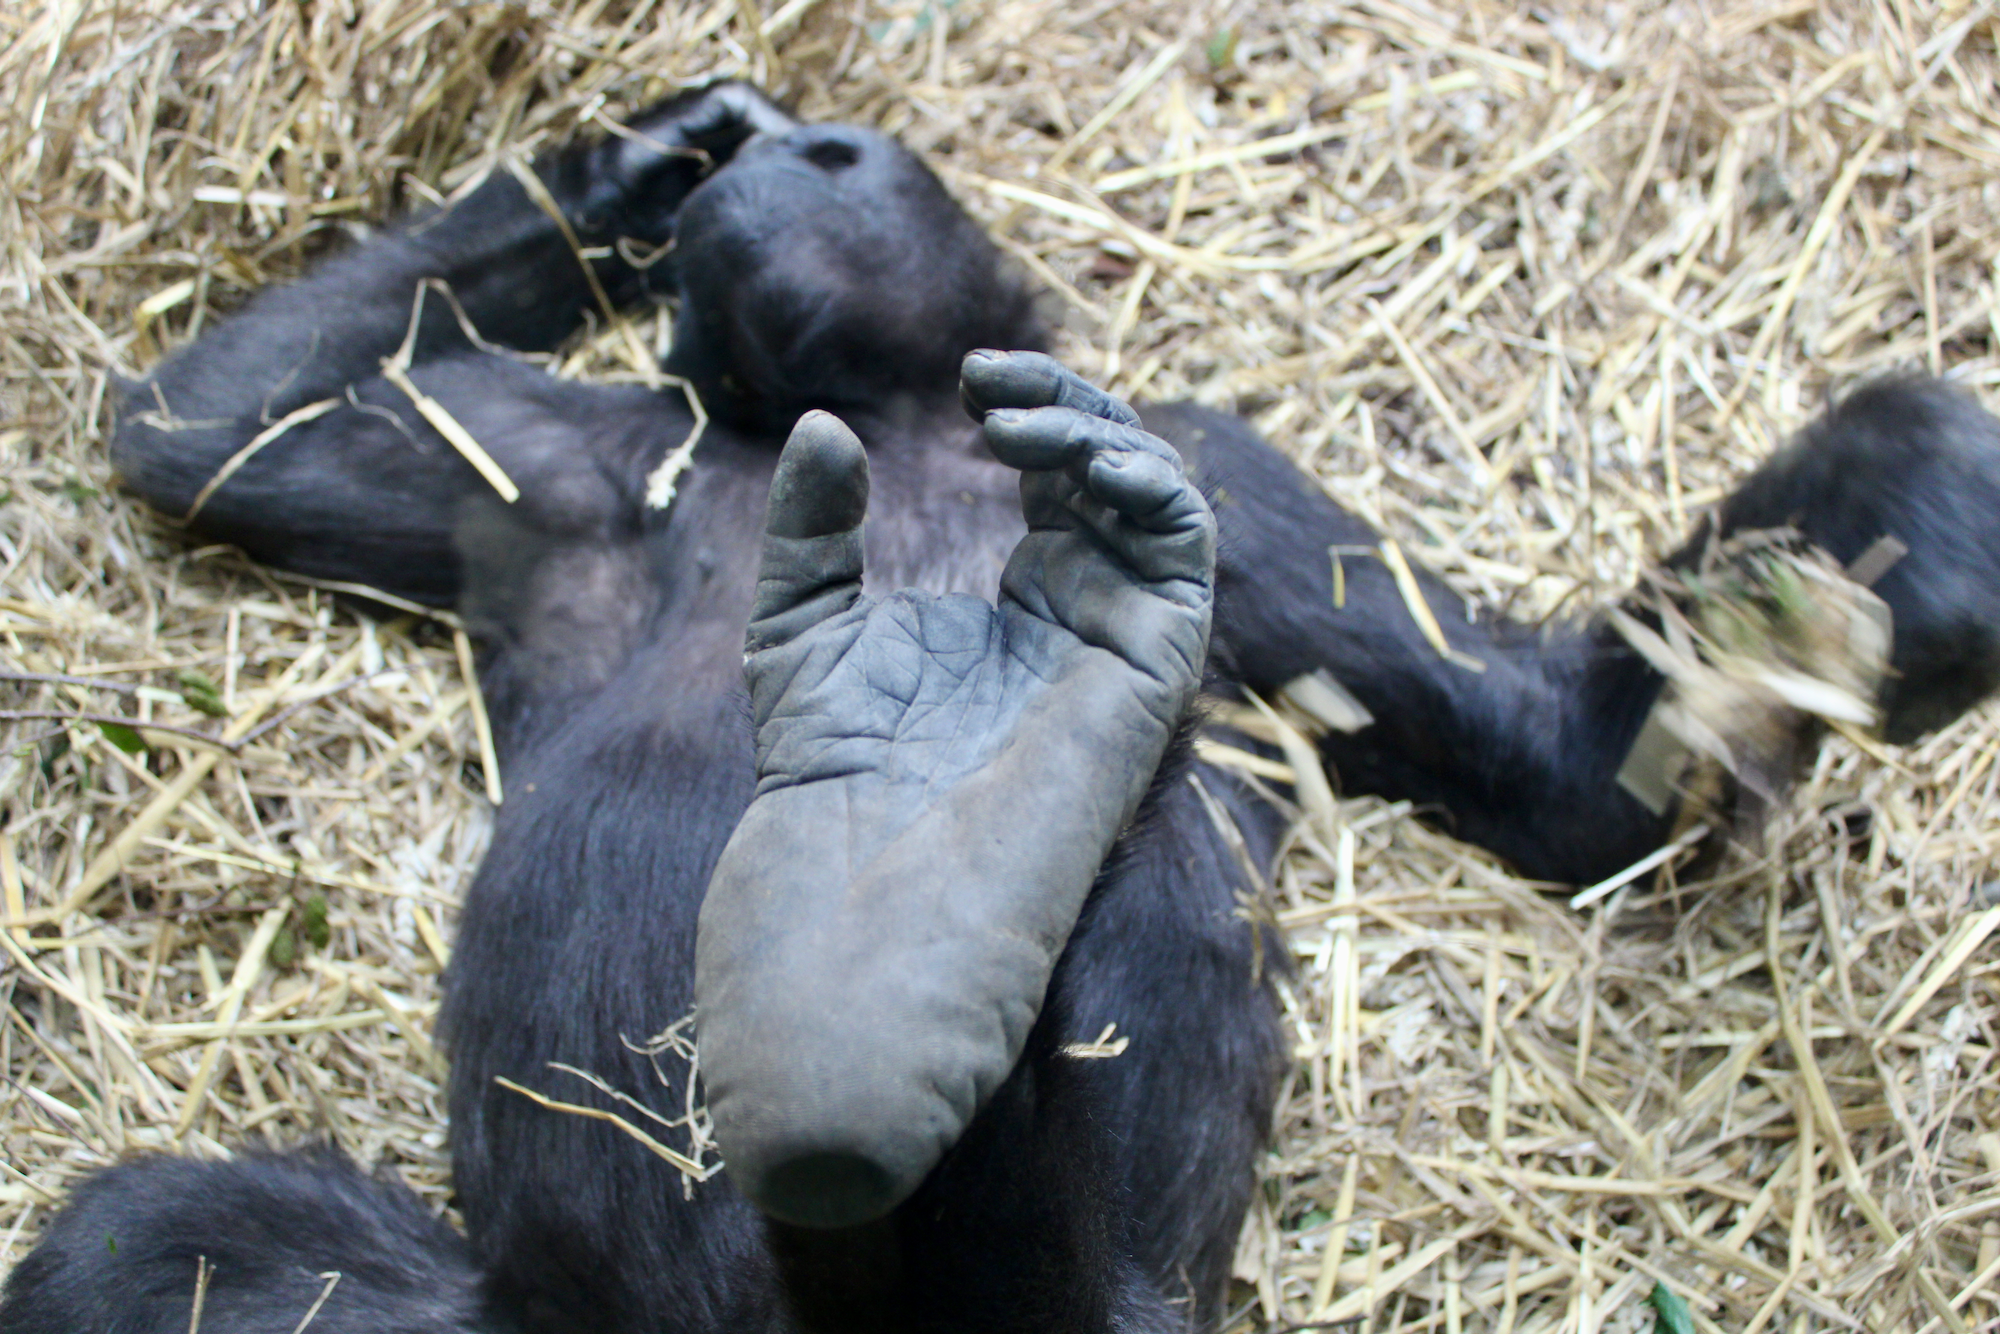 Chimpanzee shows his feet